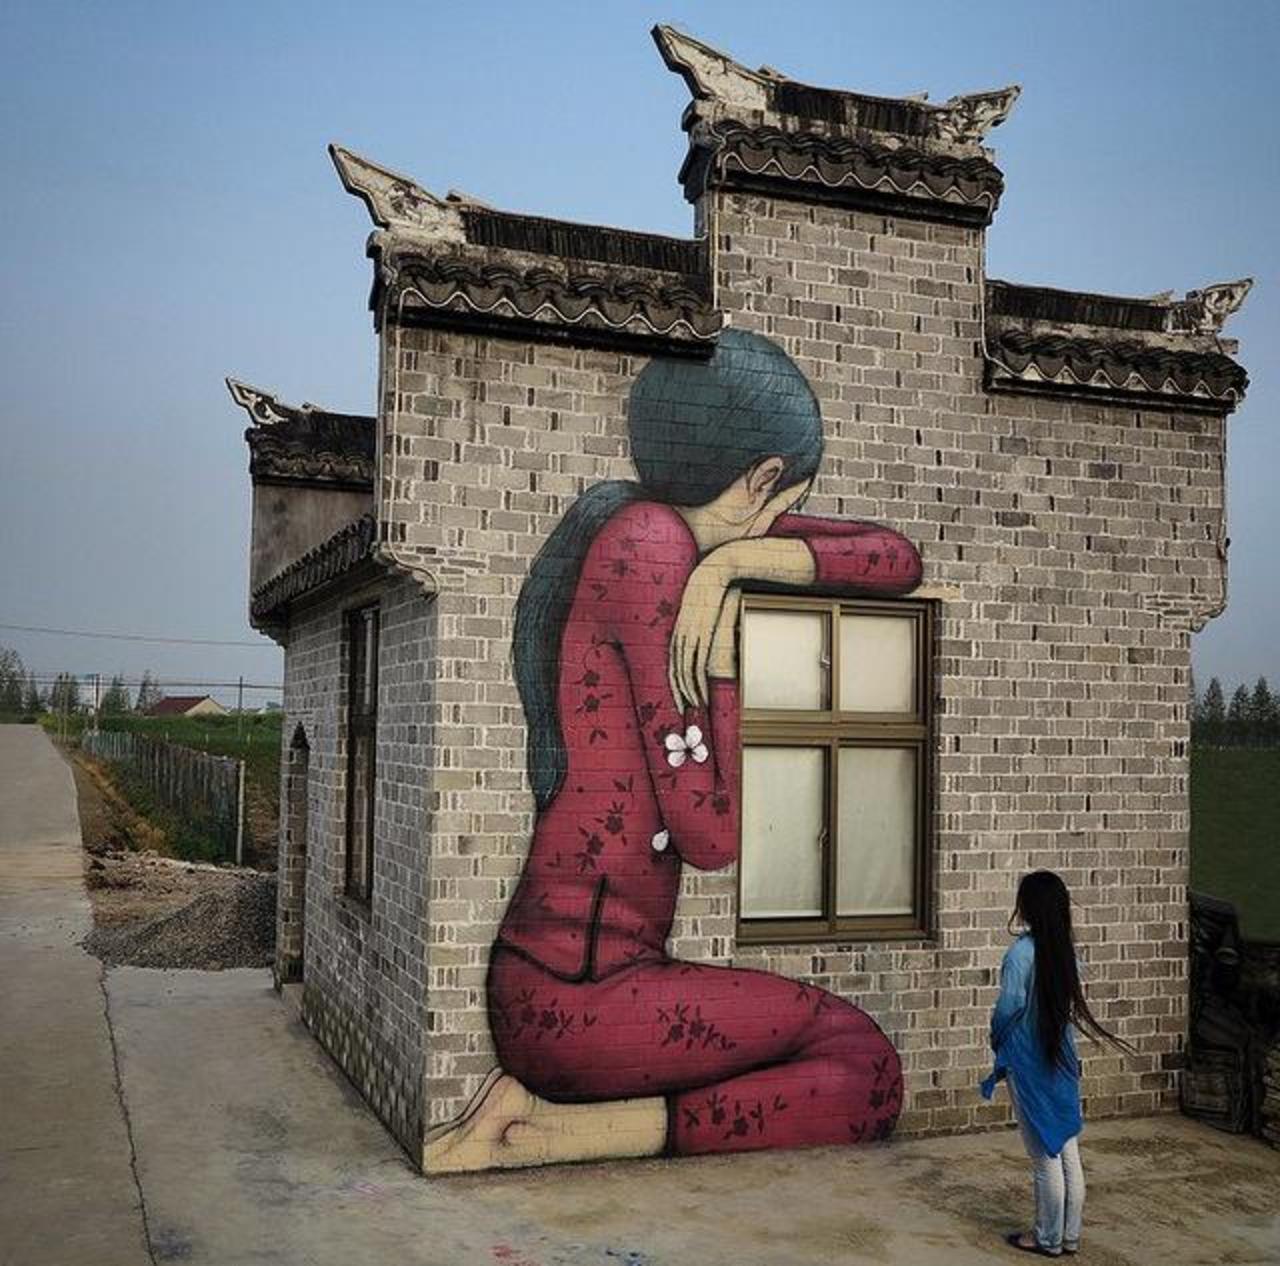 New Street Art by Seth Globepainter in Fengzing, China 

#art #arte #graffiti #streetart http://t.co/sd1FtGQkjn